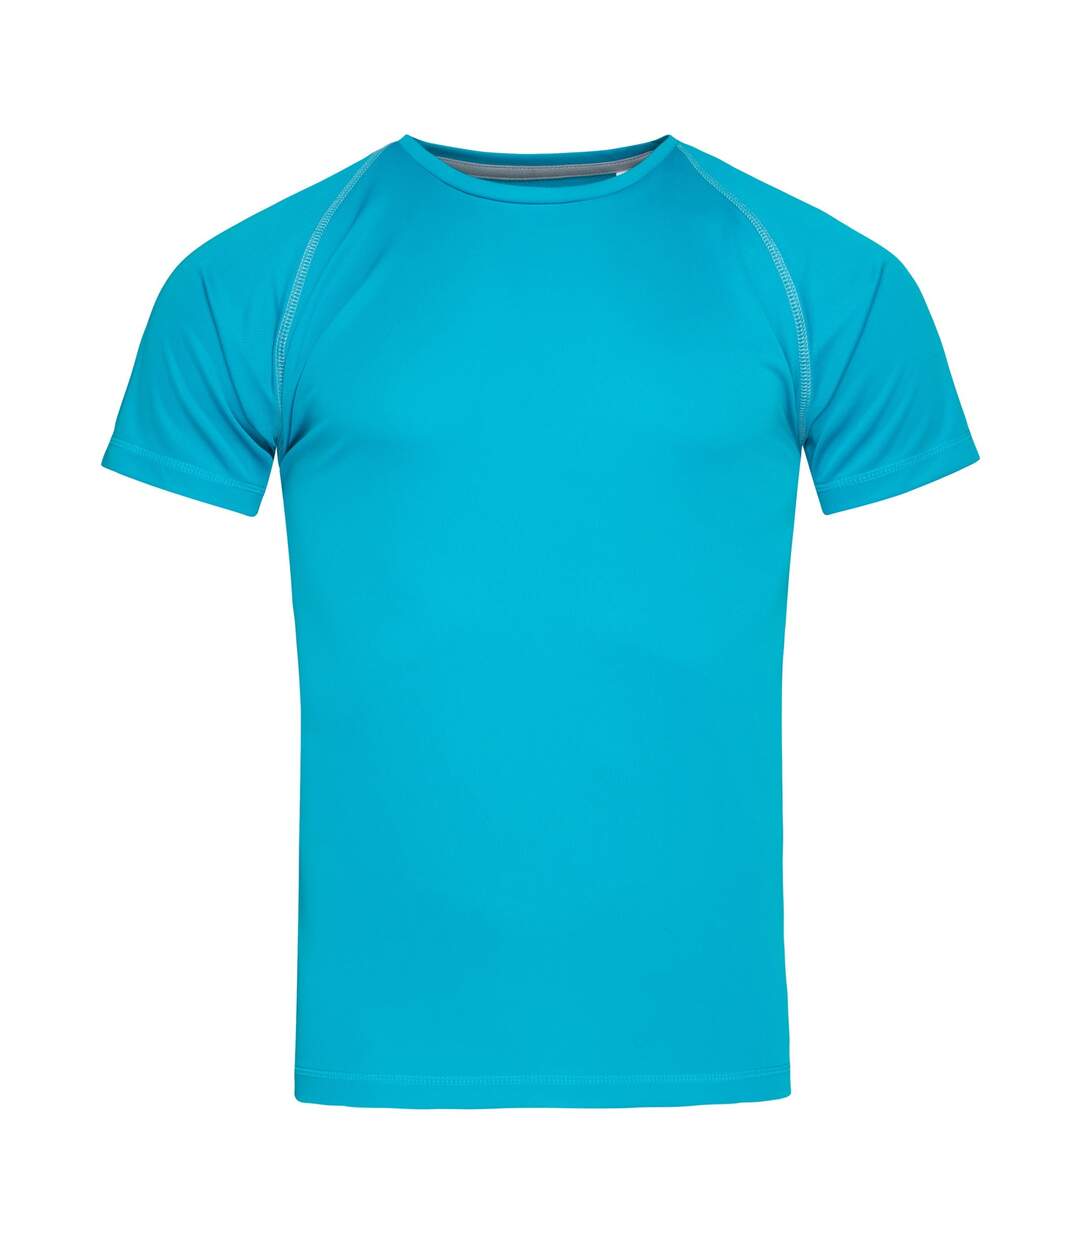 Stedman Mens Active Raglan T-Shirt (Hawaii Blue)